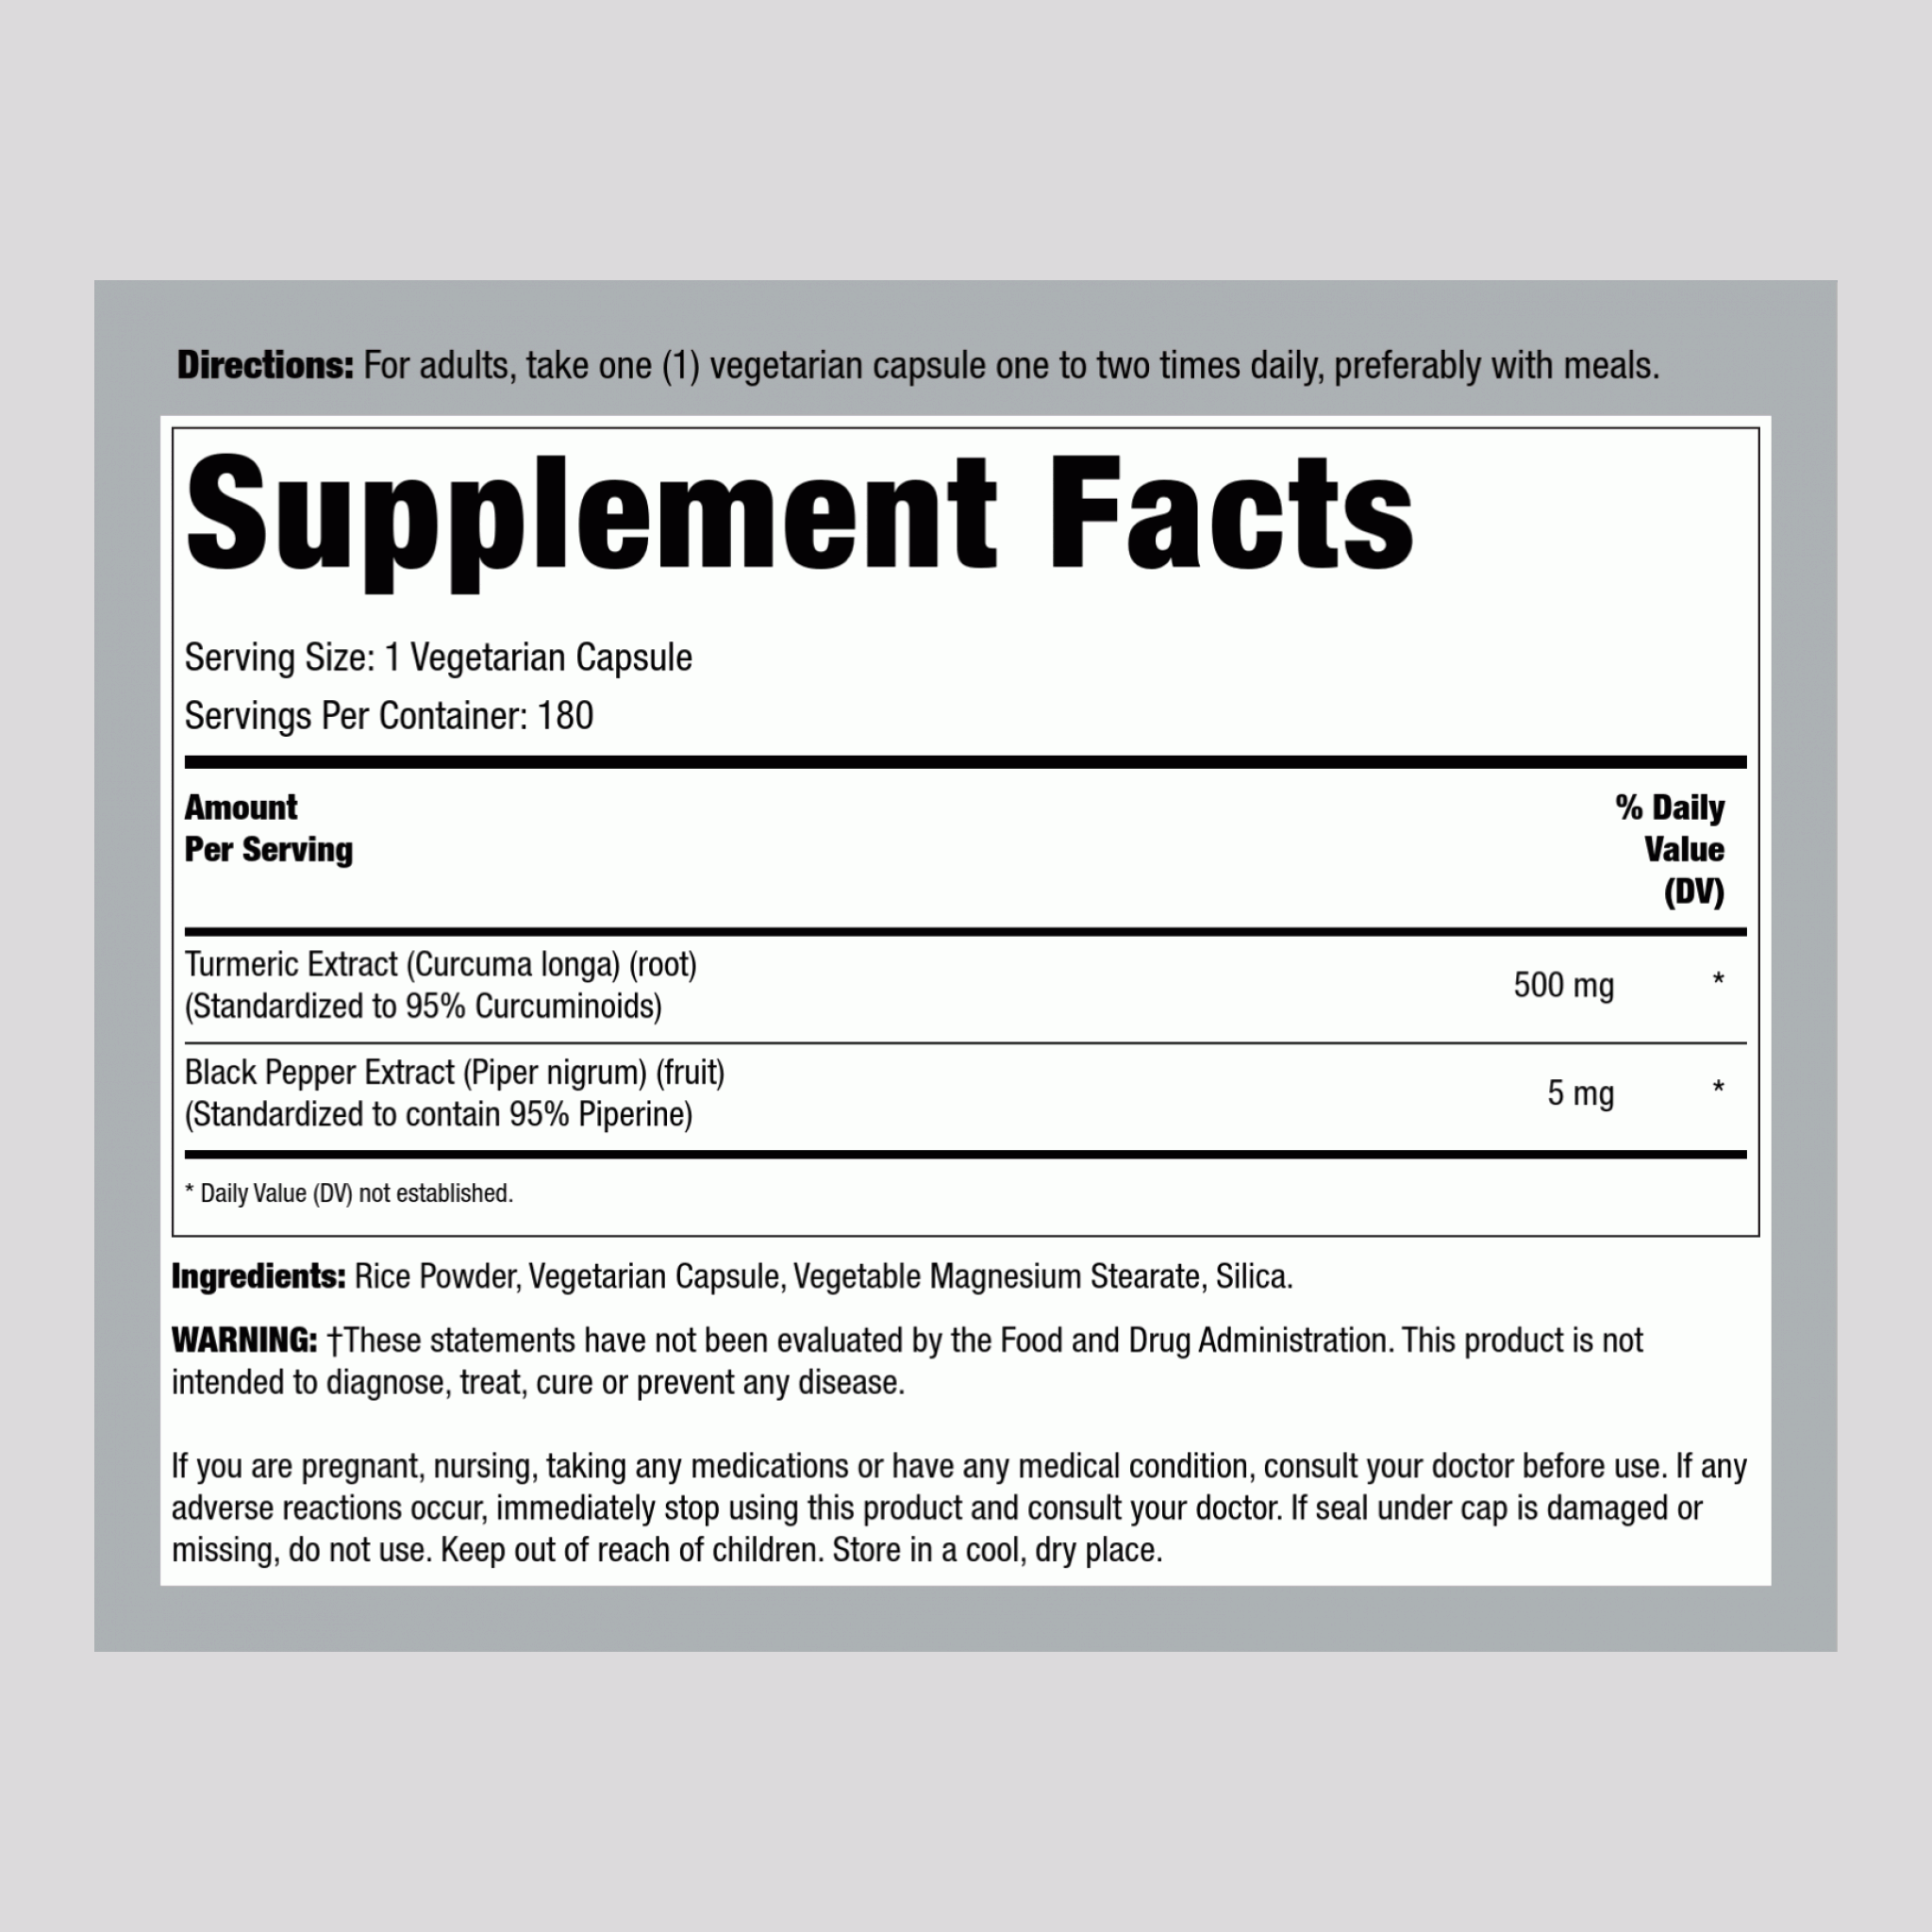 Turmeric Curcumin Standardized Extract, 500 mg, 180 Vegetarian Capsules